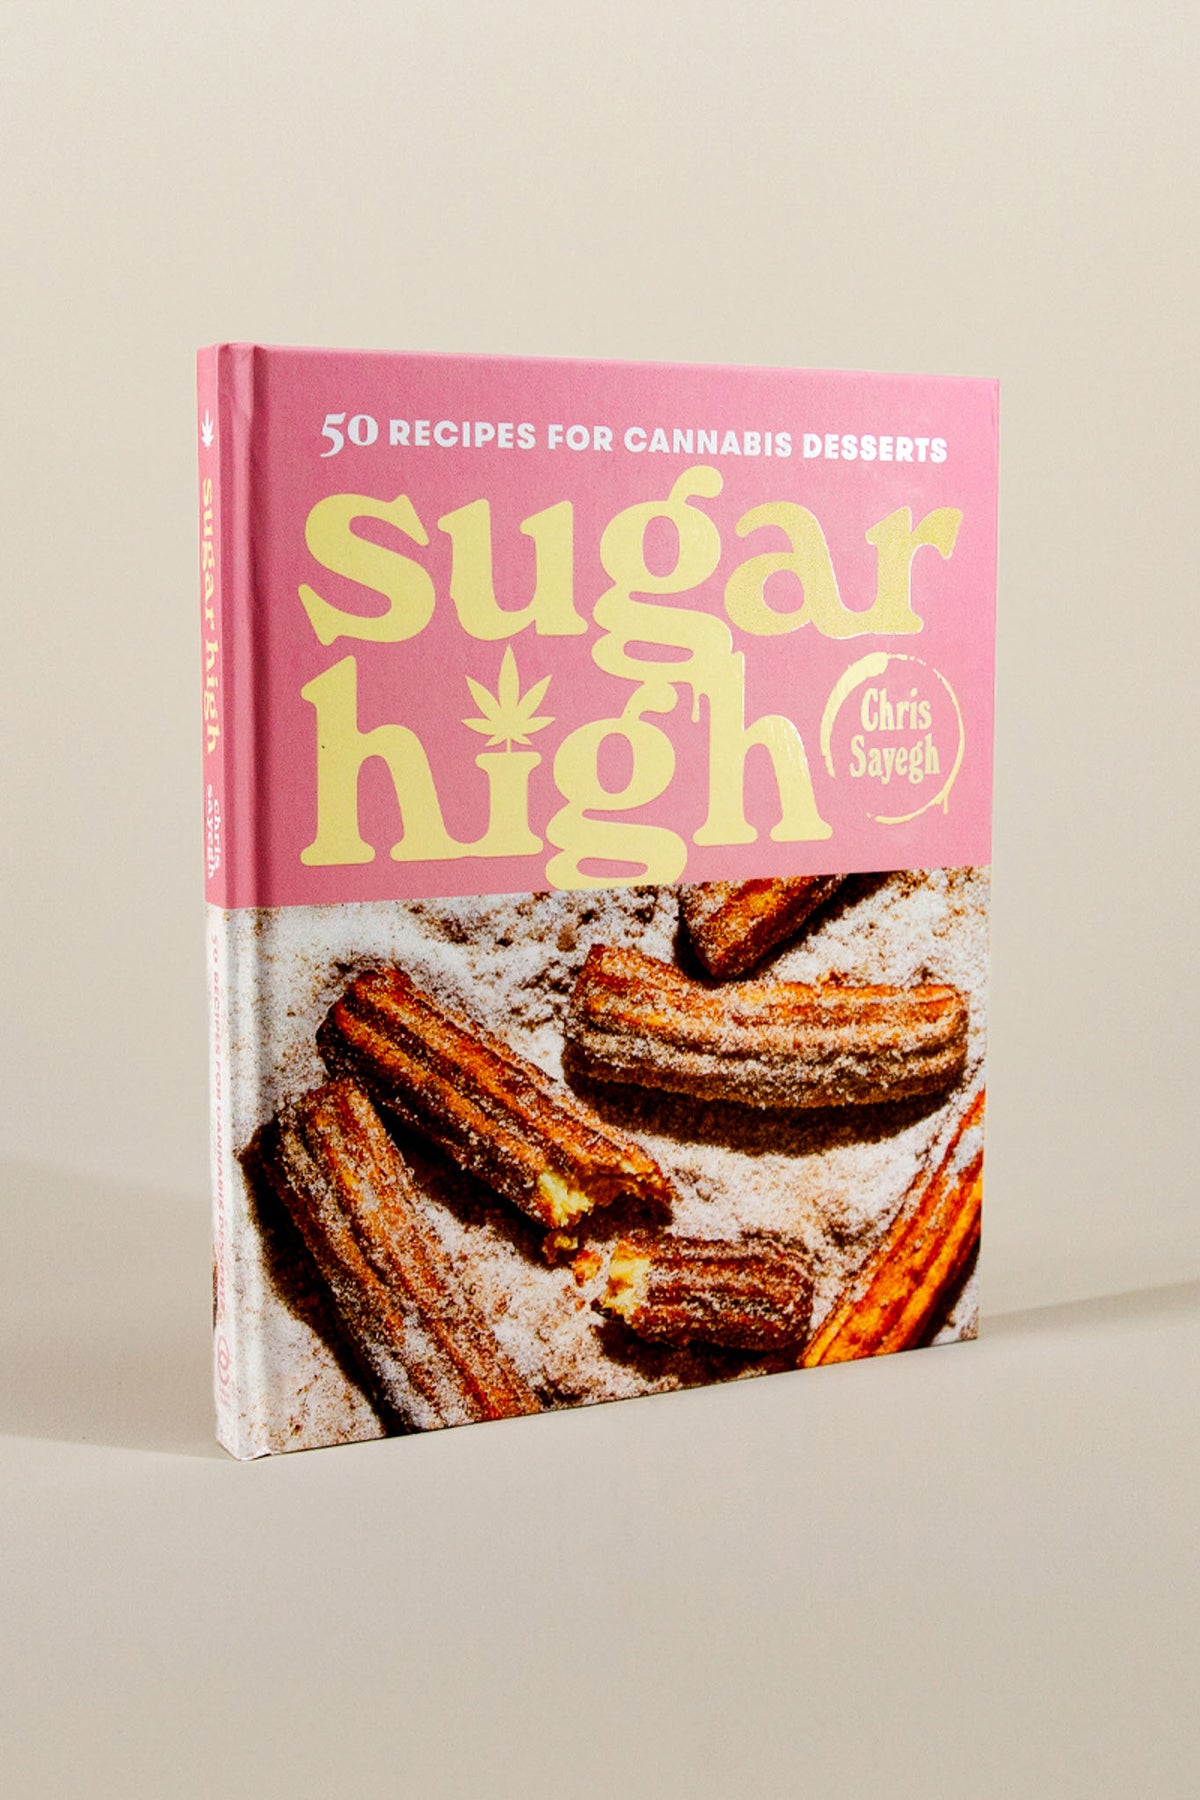 sugar high: 50 recipes for cannabis desserts